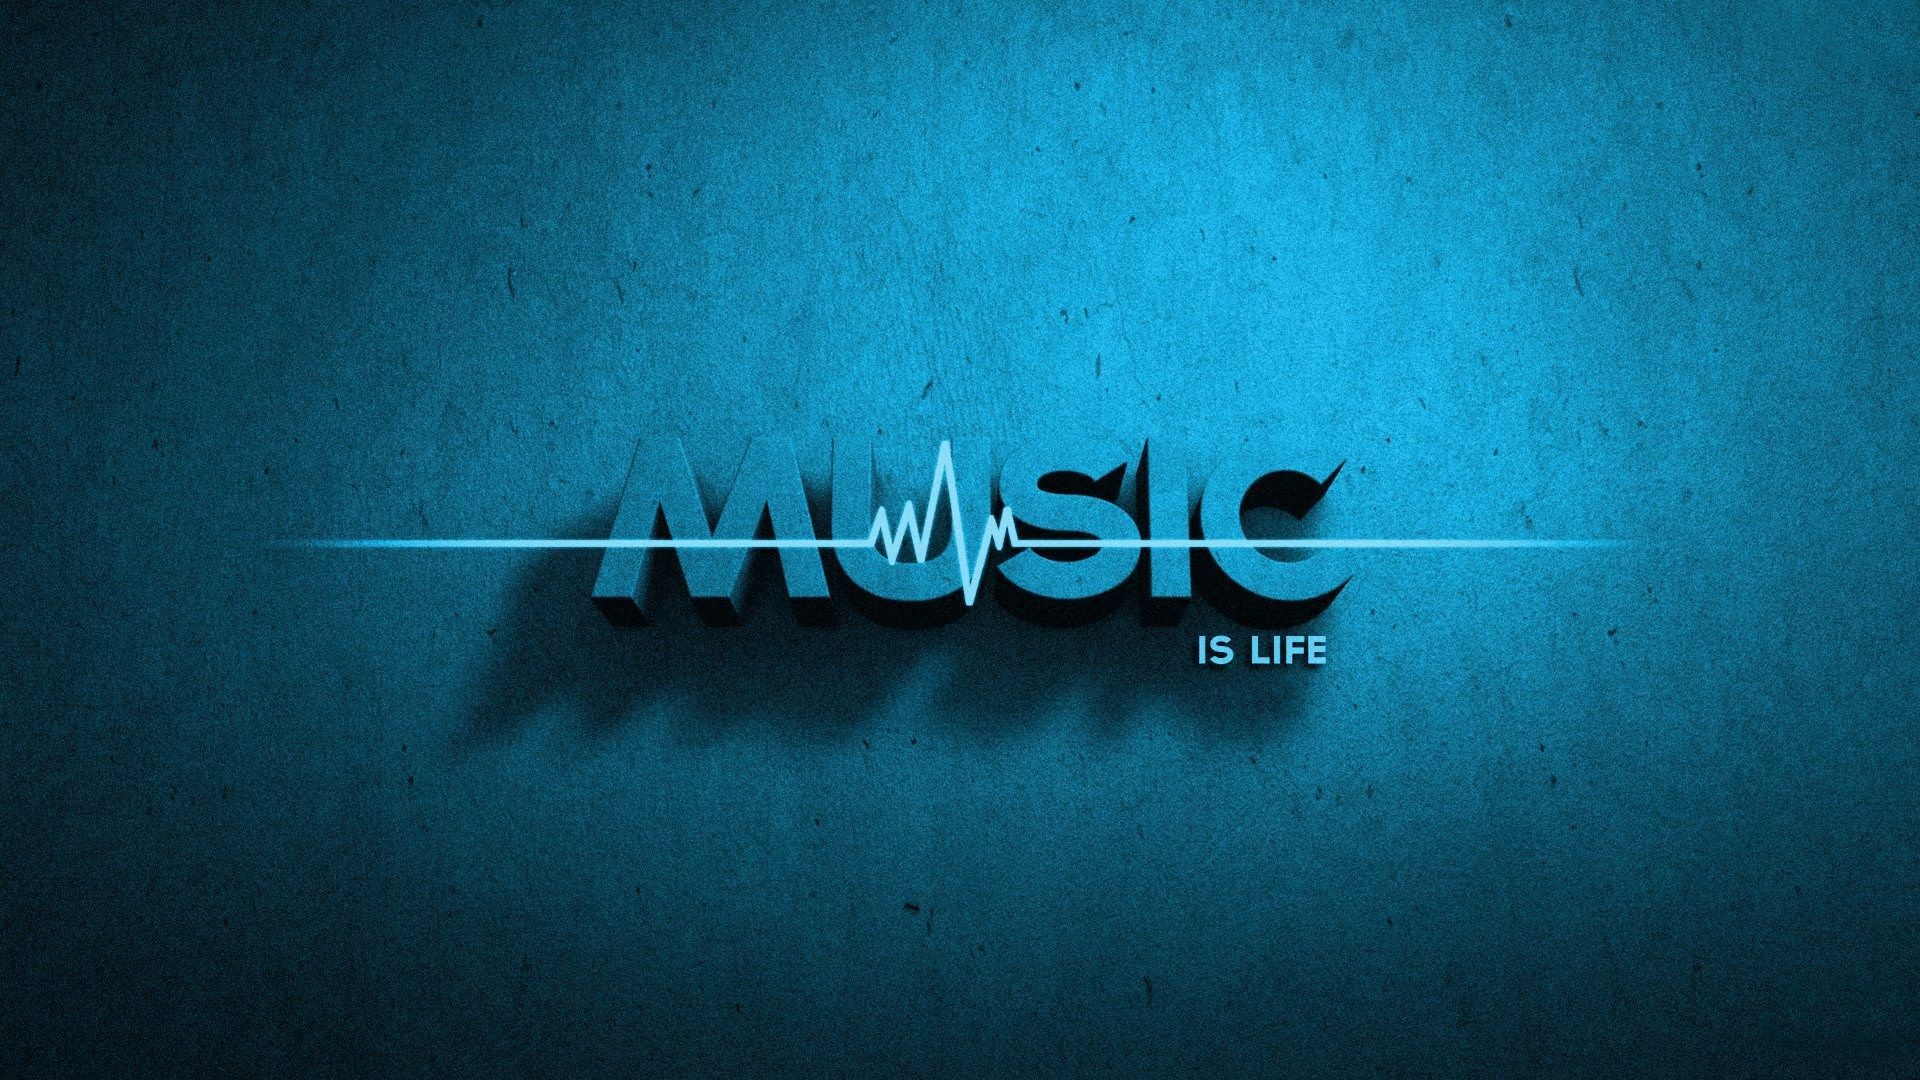 music HD widescreen wallpaper for laptop. Music wallpaper, Music is life, iPhone wallpaper music